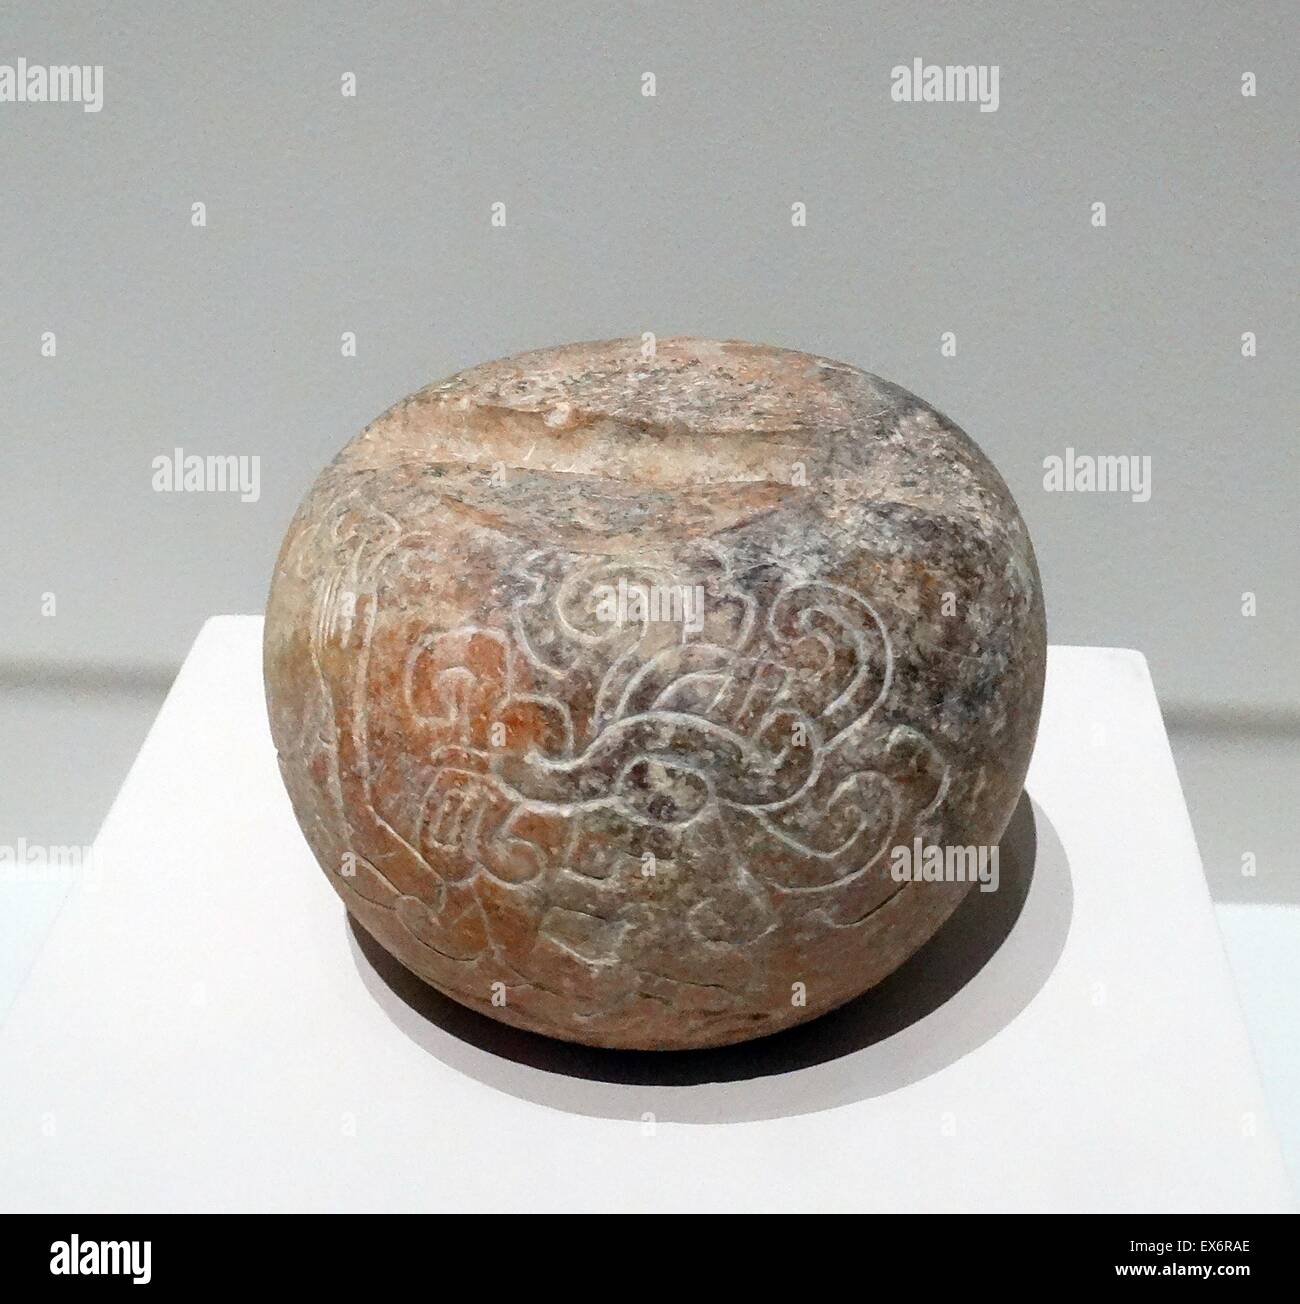 Kalkstein Ballspiel Marker Kugel aus Tabasco, Mexiko. Vom 250-900 n. Chr.. Stockfoto